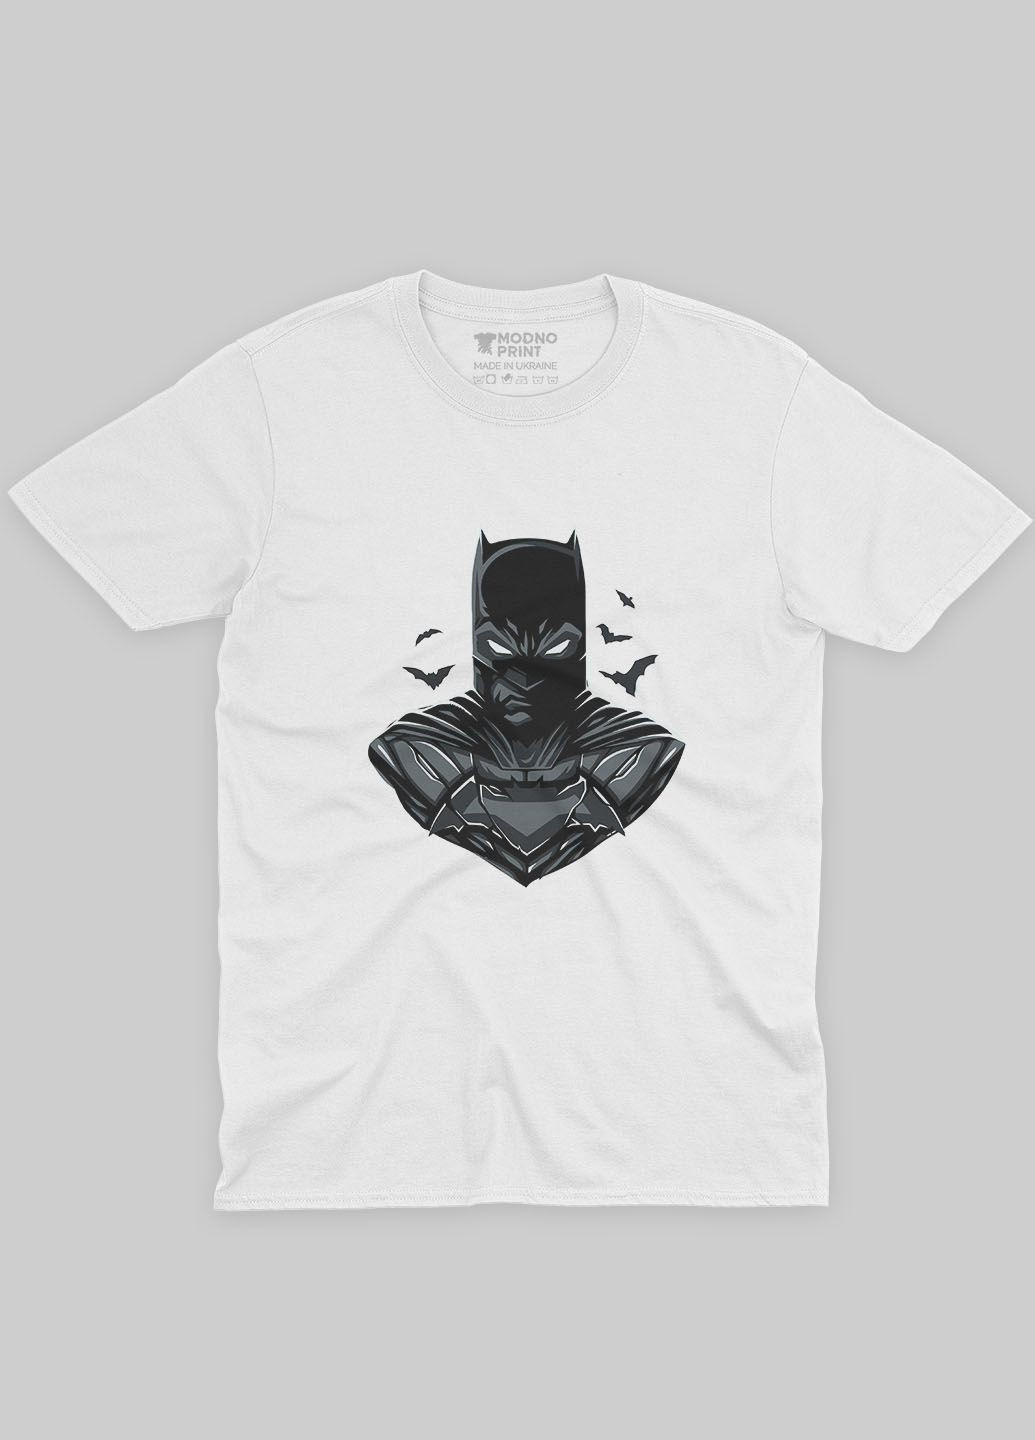 Біла демісезонна футболка для дівчинки з принтом супергероя - бетмен (ts001-1-whi-006-003-026-g) Modno